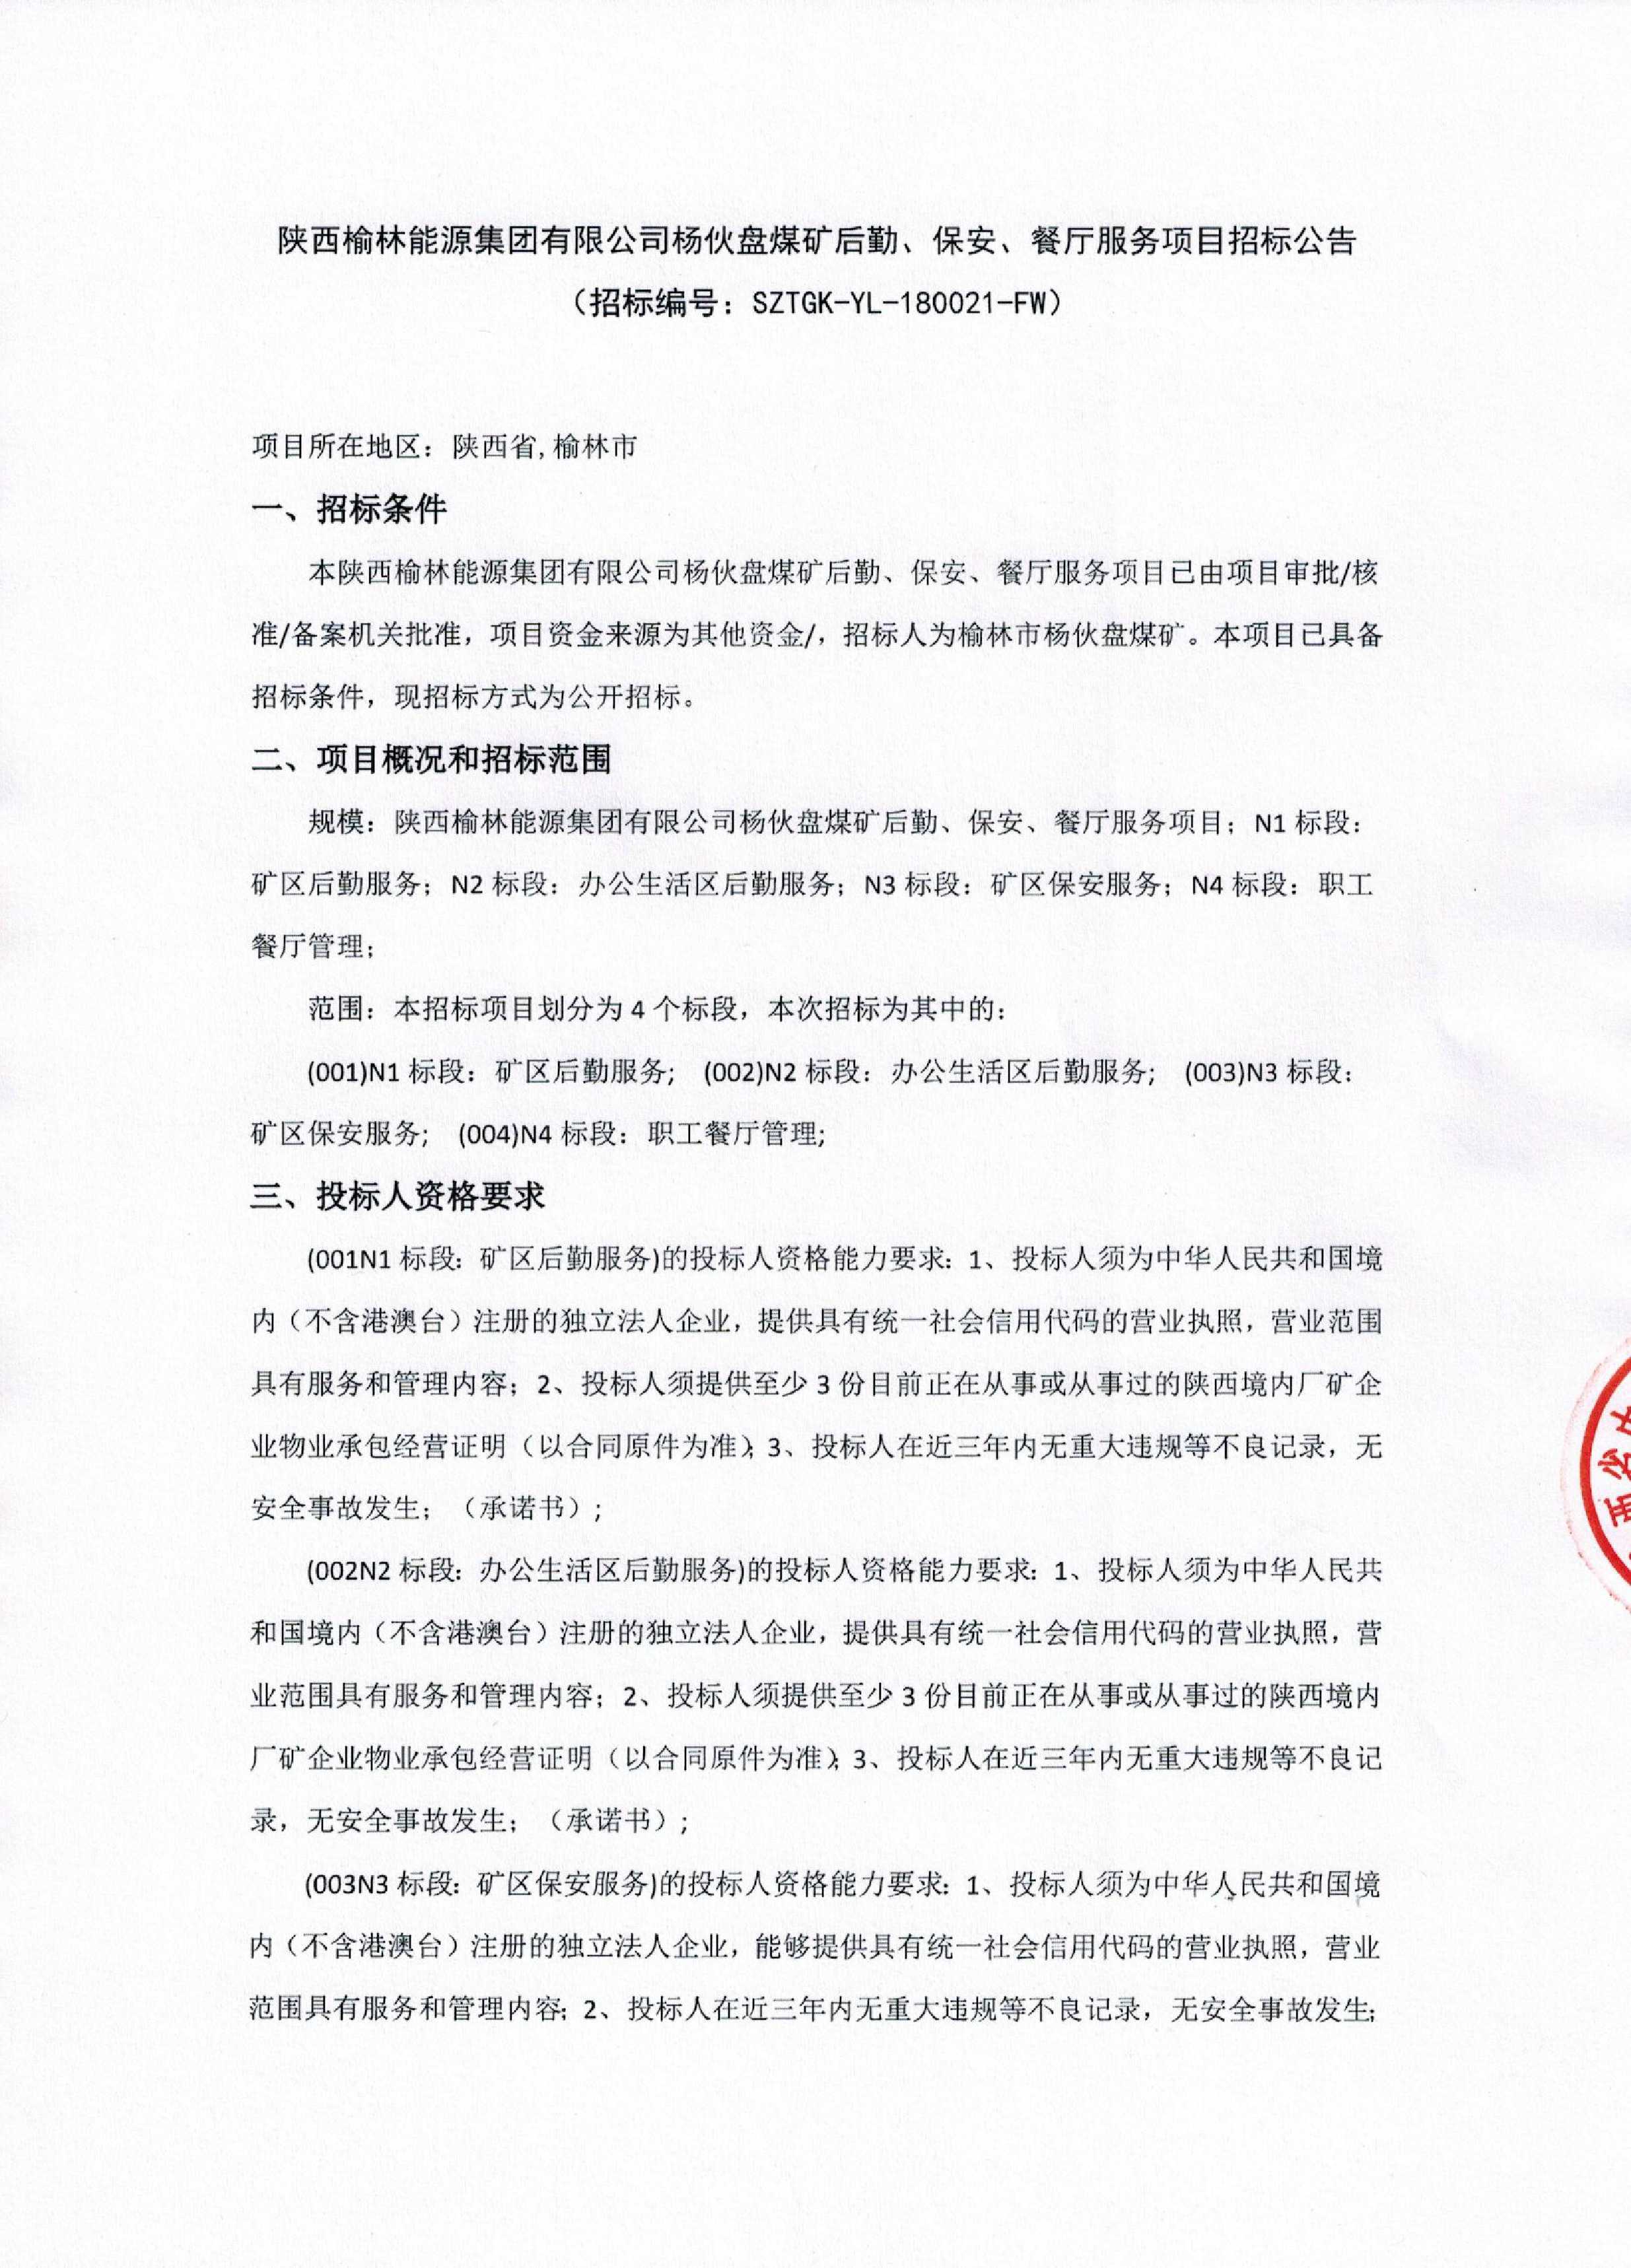 陕西榆林能源集团有限公司杨伙盘煤矿后勤、保